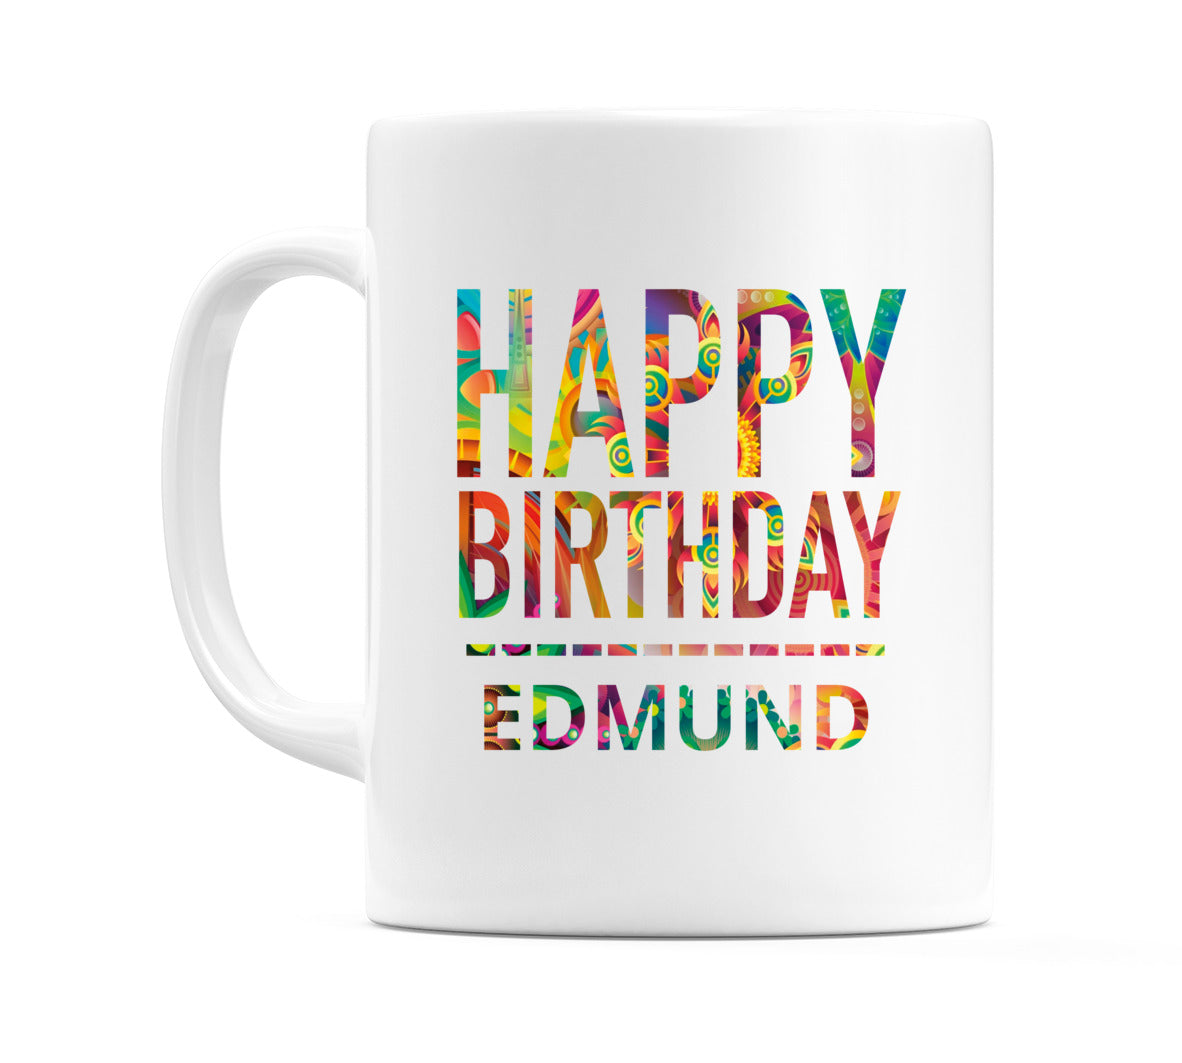 Happy Birthday Edmund (Tie Dye Effect) Mug Cup by WeDoMugs